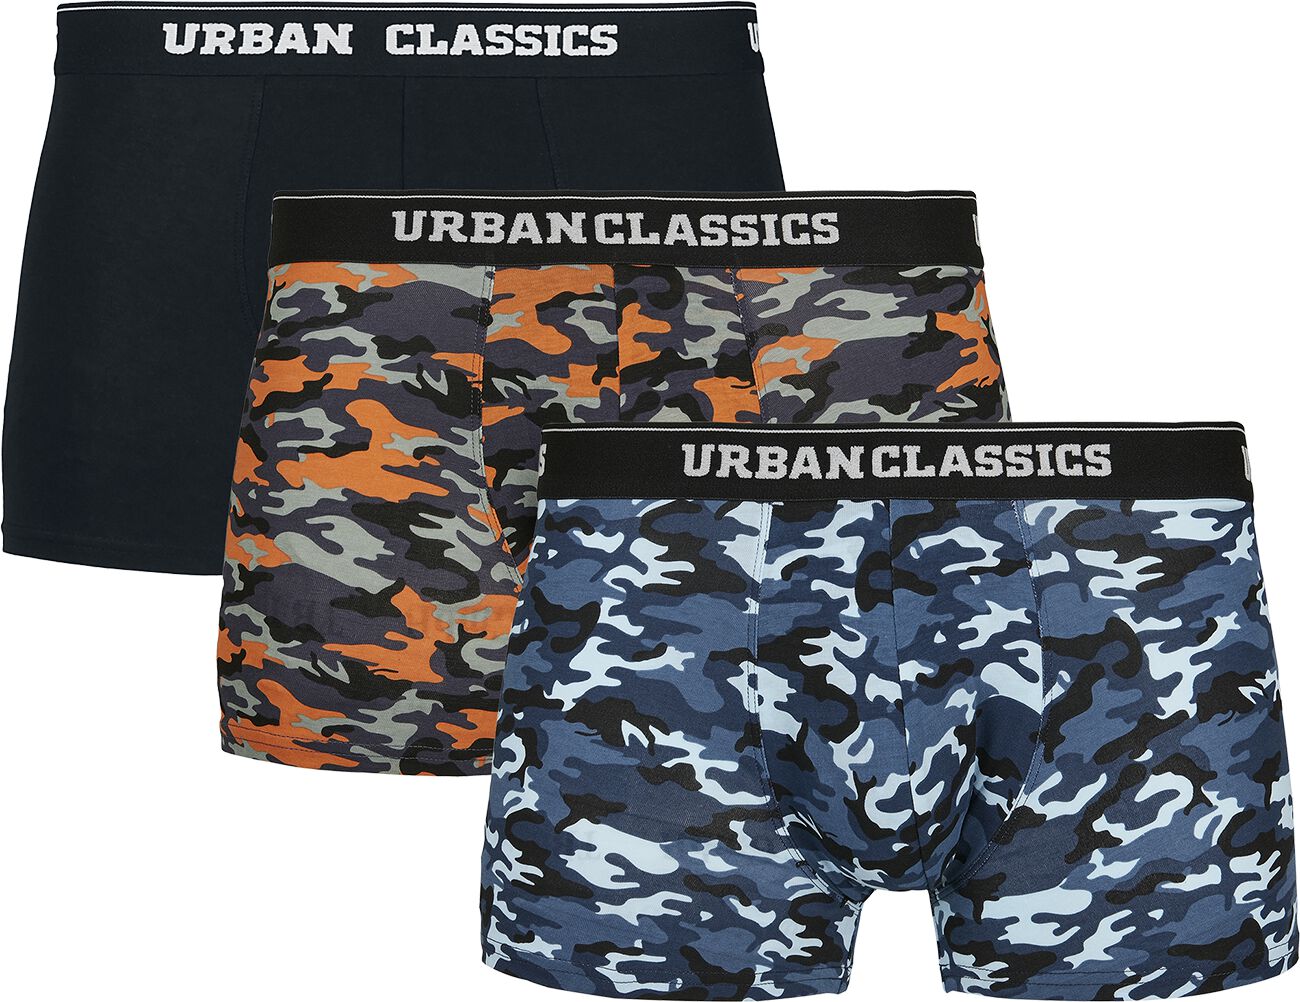 Lot de Boxers de Urban Classics - Lot De 3 Boxers - S à XXL - pour Homme - noir/camouflage